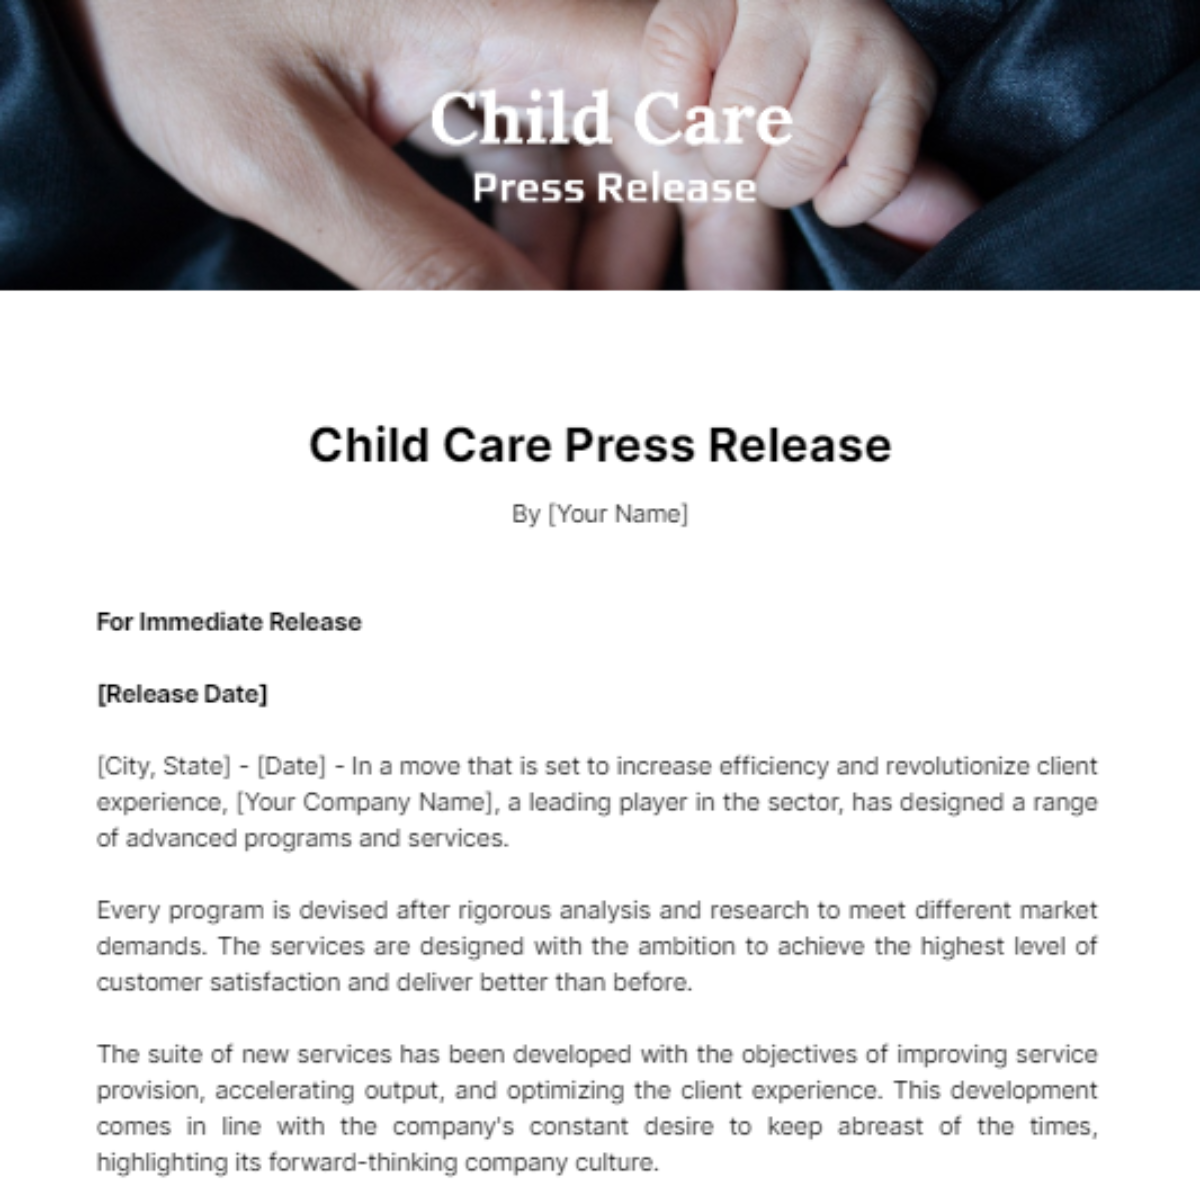 Child Care Press Release Template